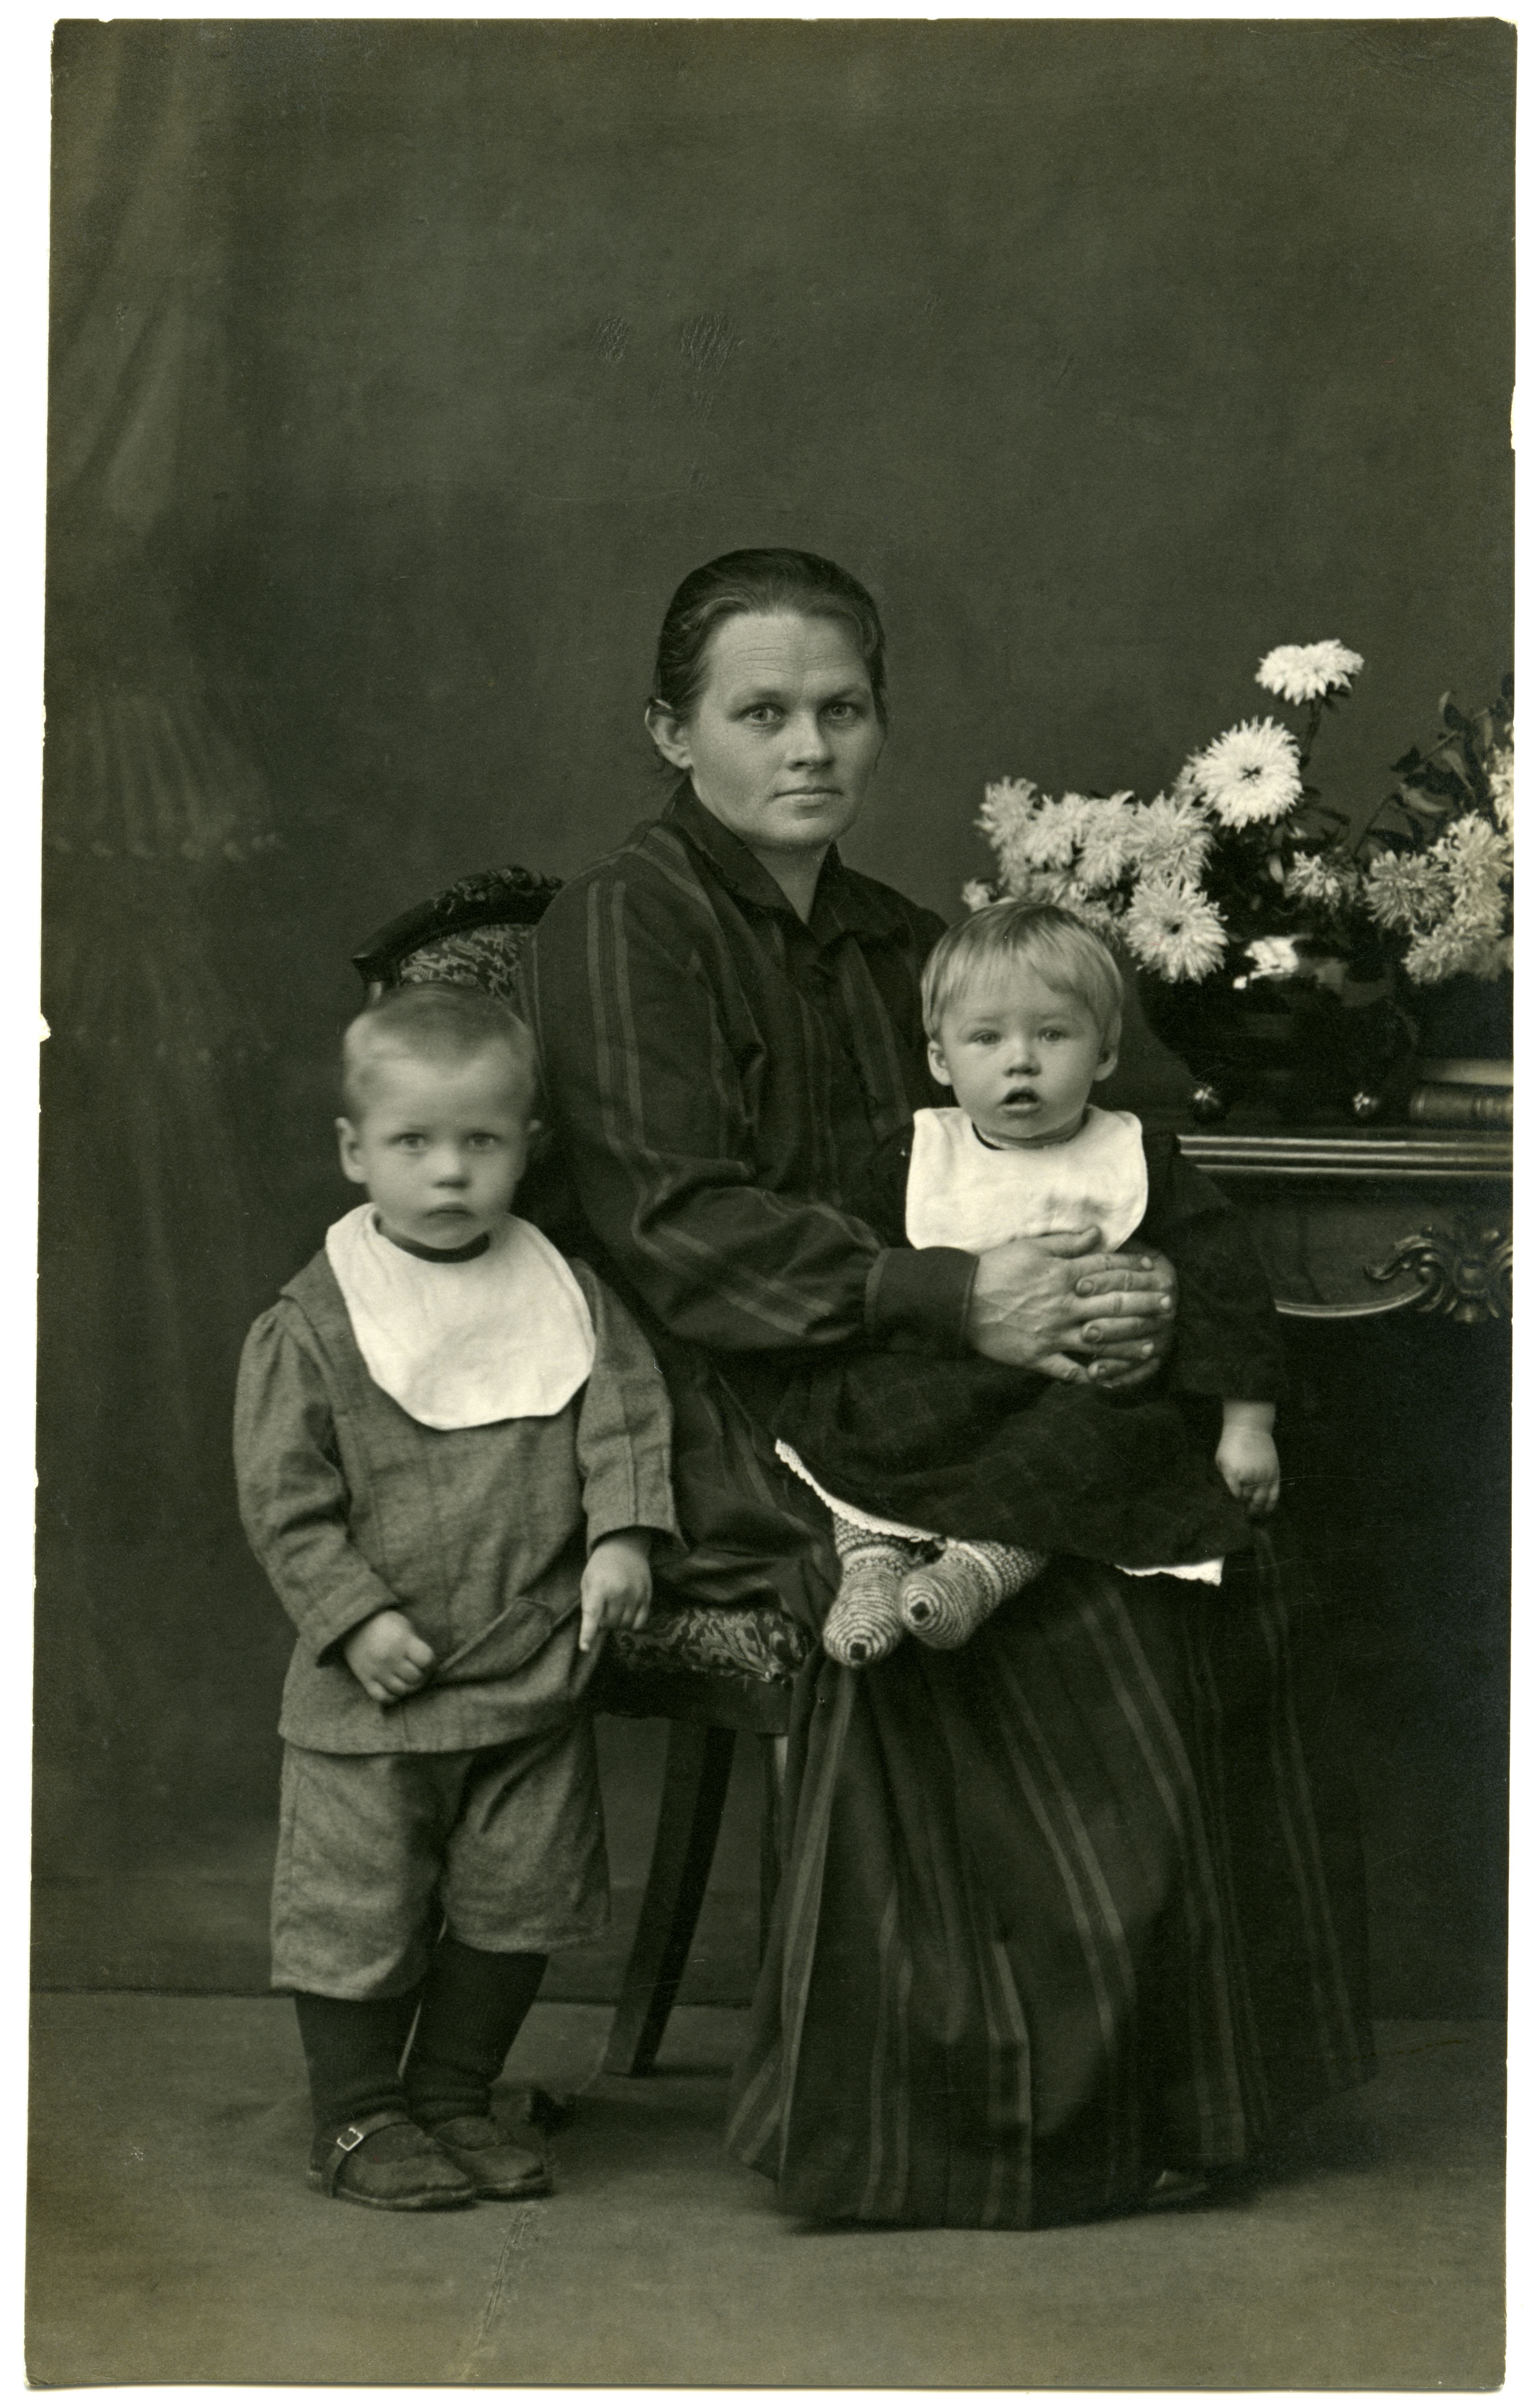 Ema kahe väikelapsega. Emal triibuline kleit, istub väiksem laps süles, poisike seisab tooli juures